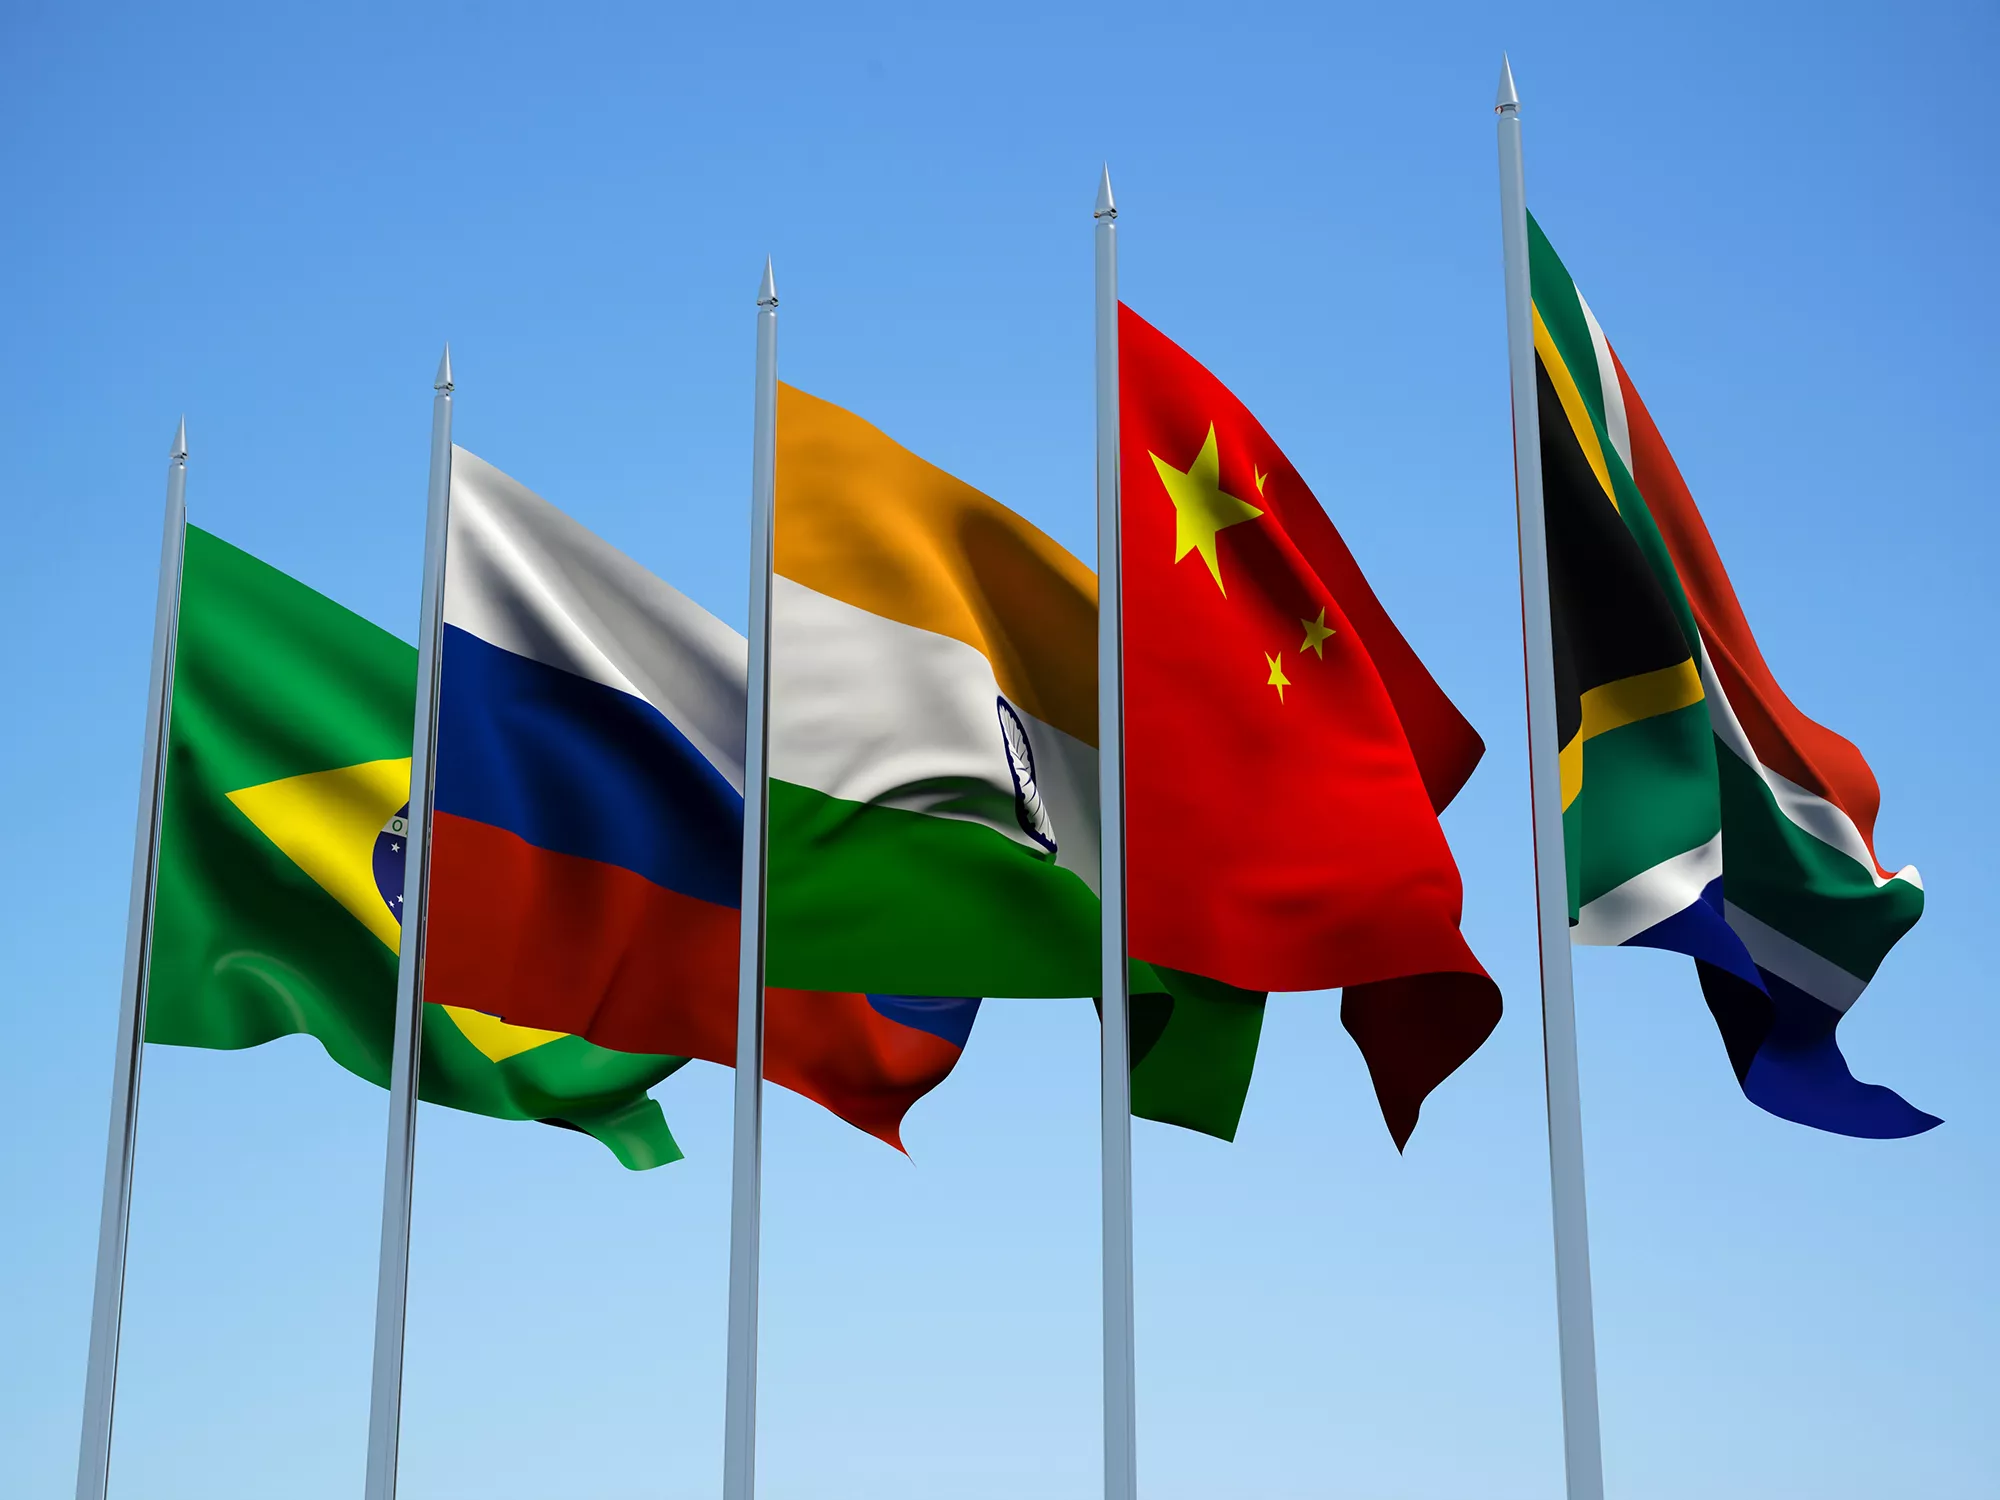 Brasil, Rússia, Índia, Xina i Sud-àfrica són els cinc països que formen l'acrònim dels BRIXS